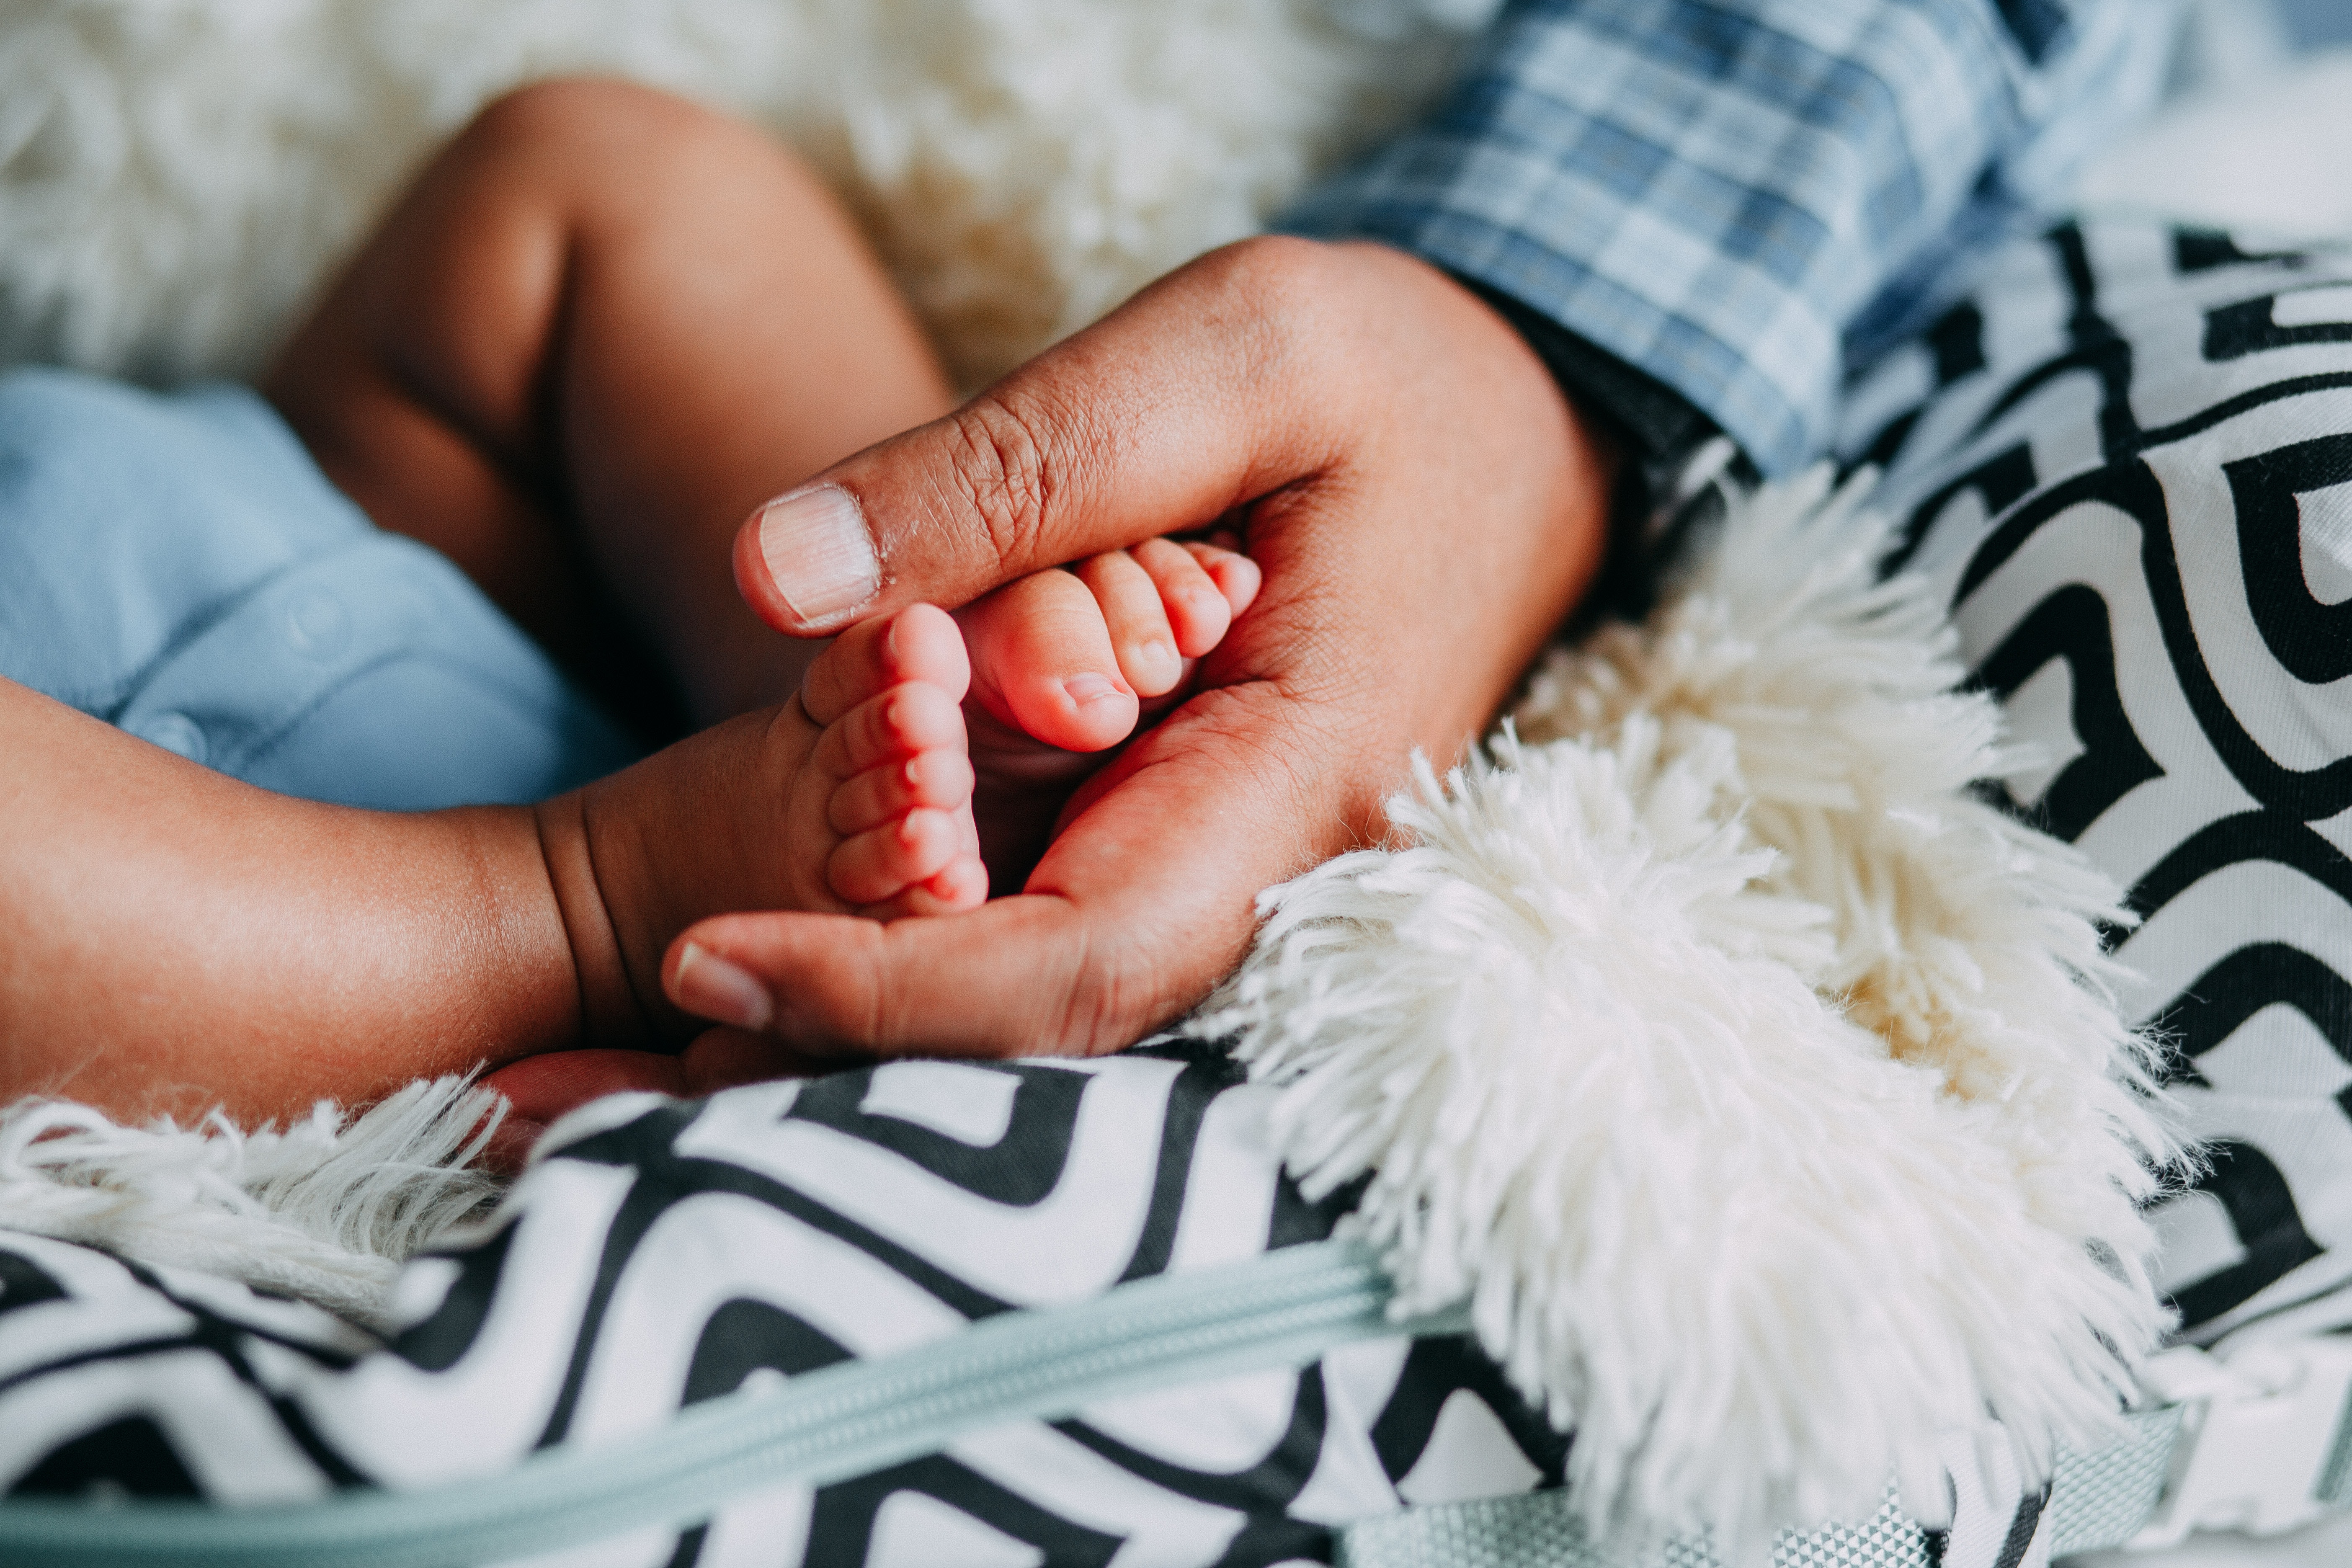 Baby's feet in parent's hands